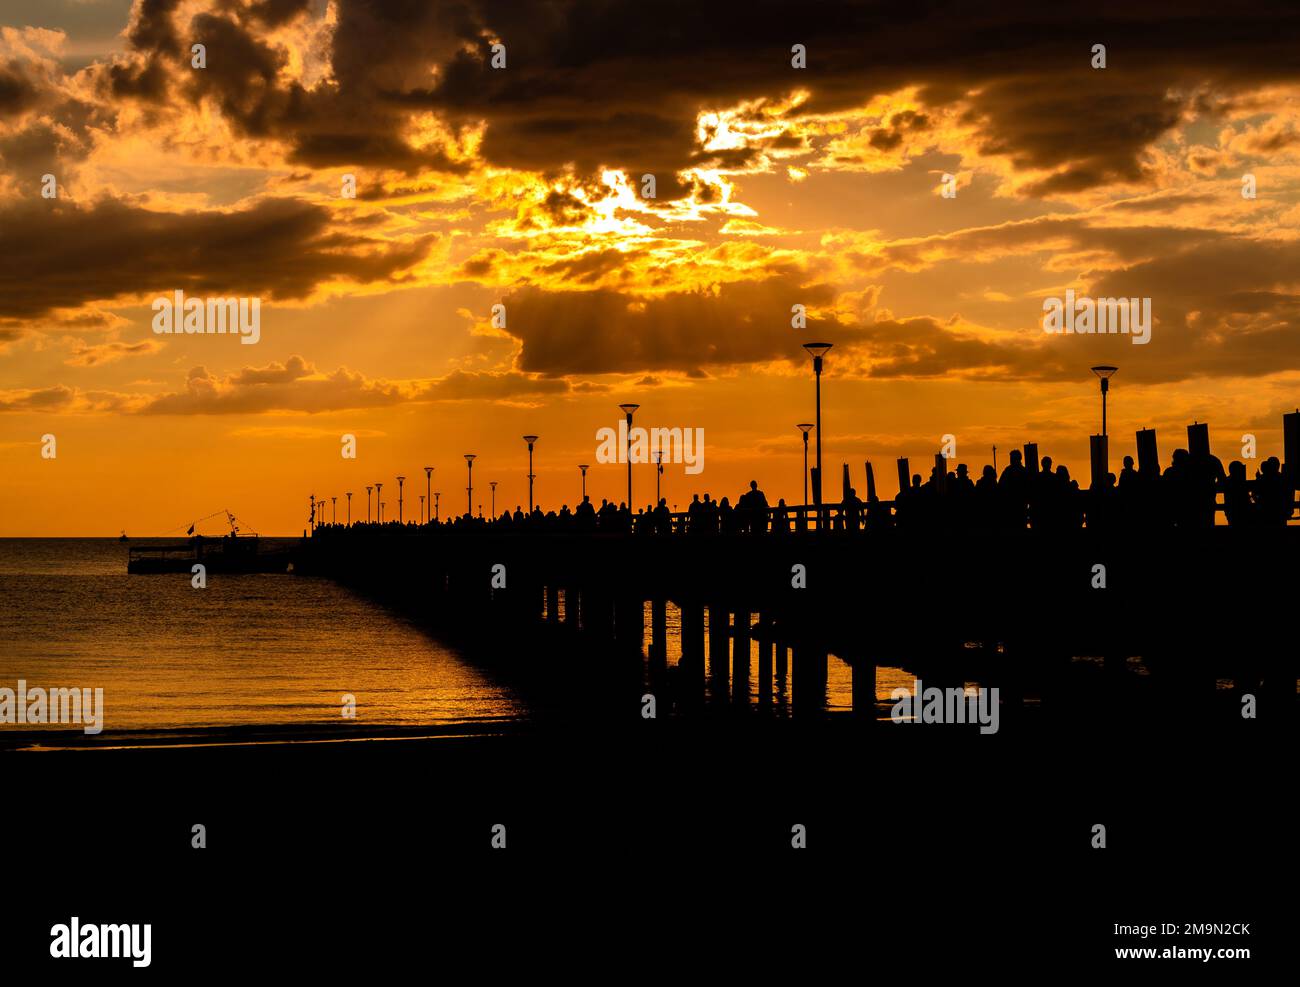 Le magnifique pont historique de Palanga sur la mer Baltique au coucher du soleil en Lituanie Banque D'Images